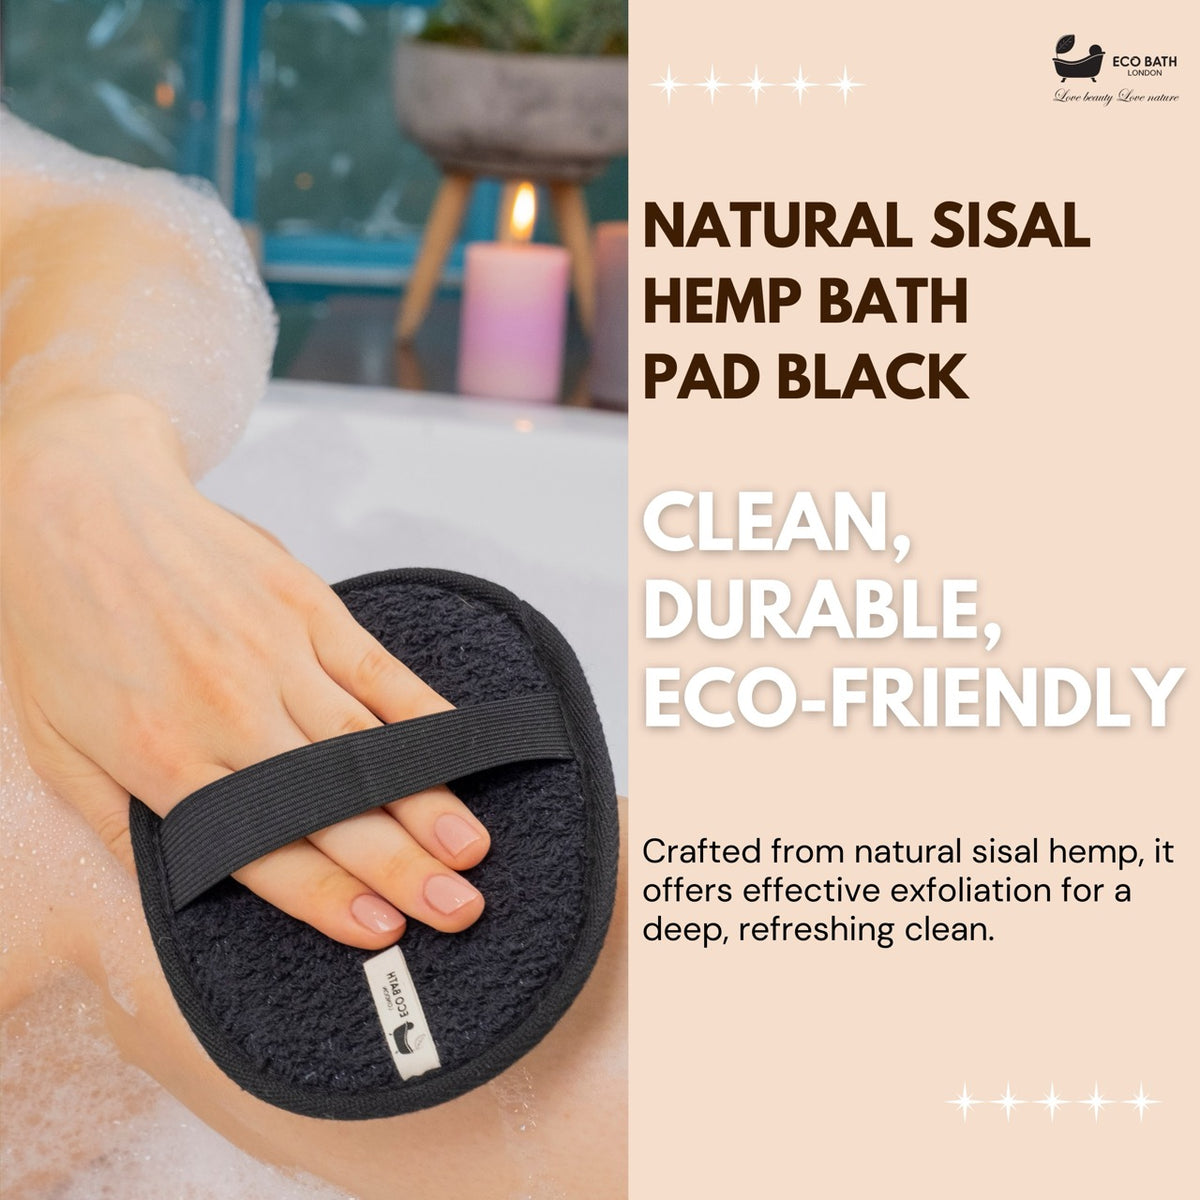 Natural Sisal Hemp Bath Pad Black